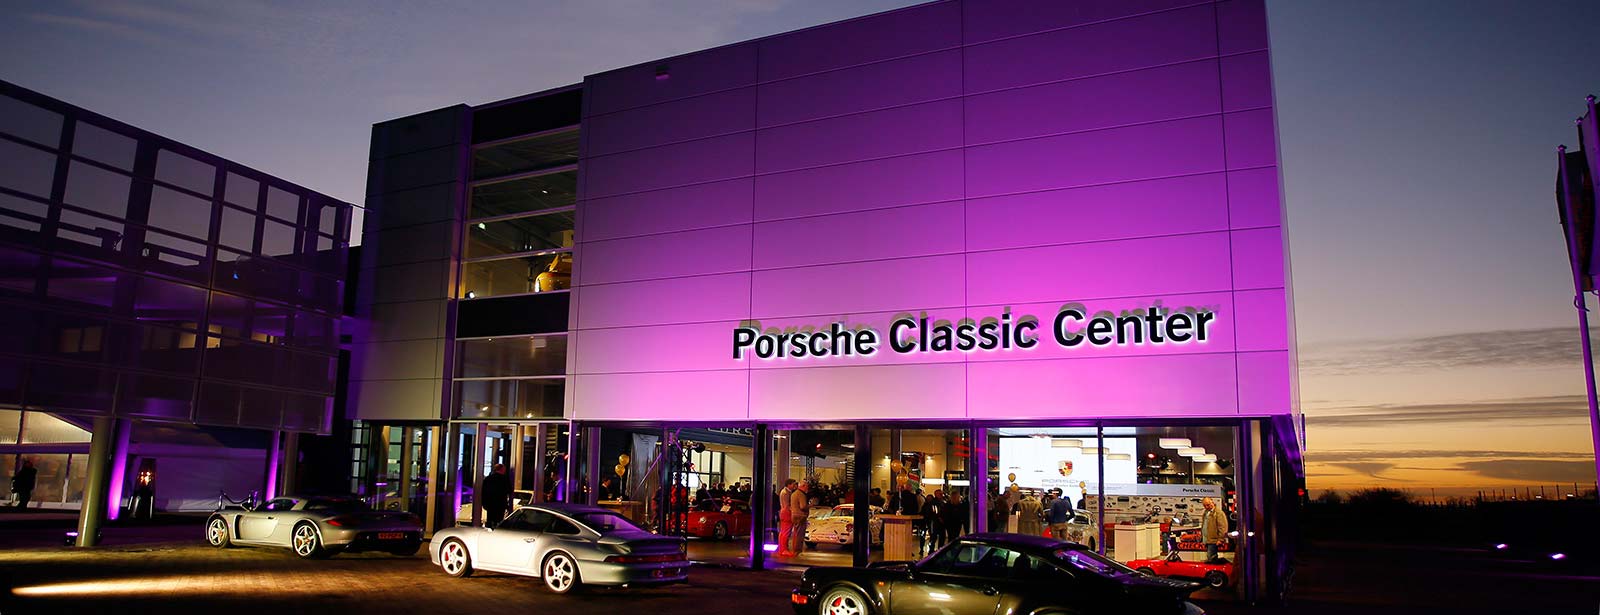 Opening Porsche Classic Center